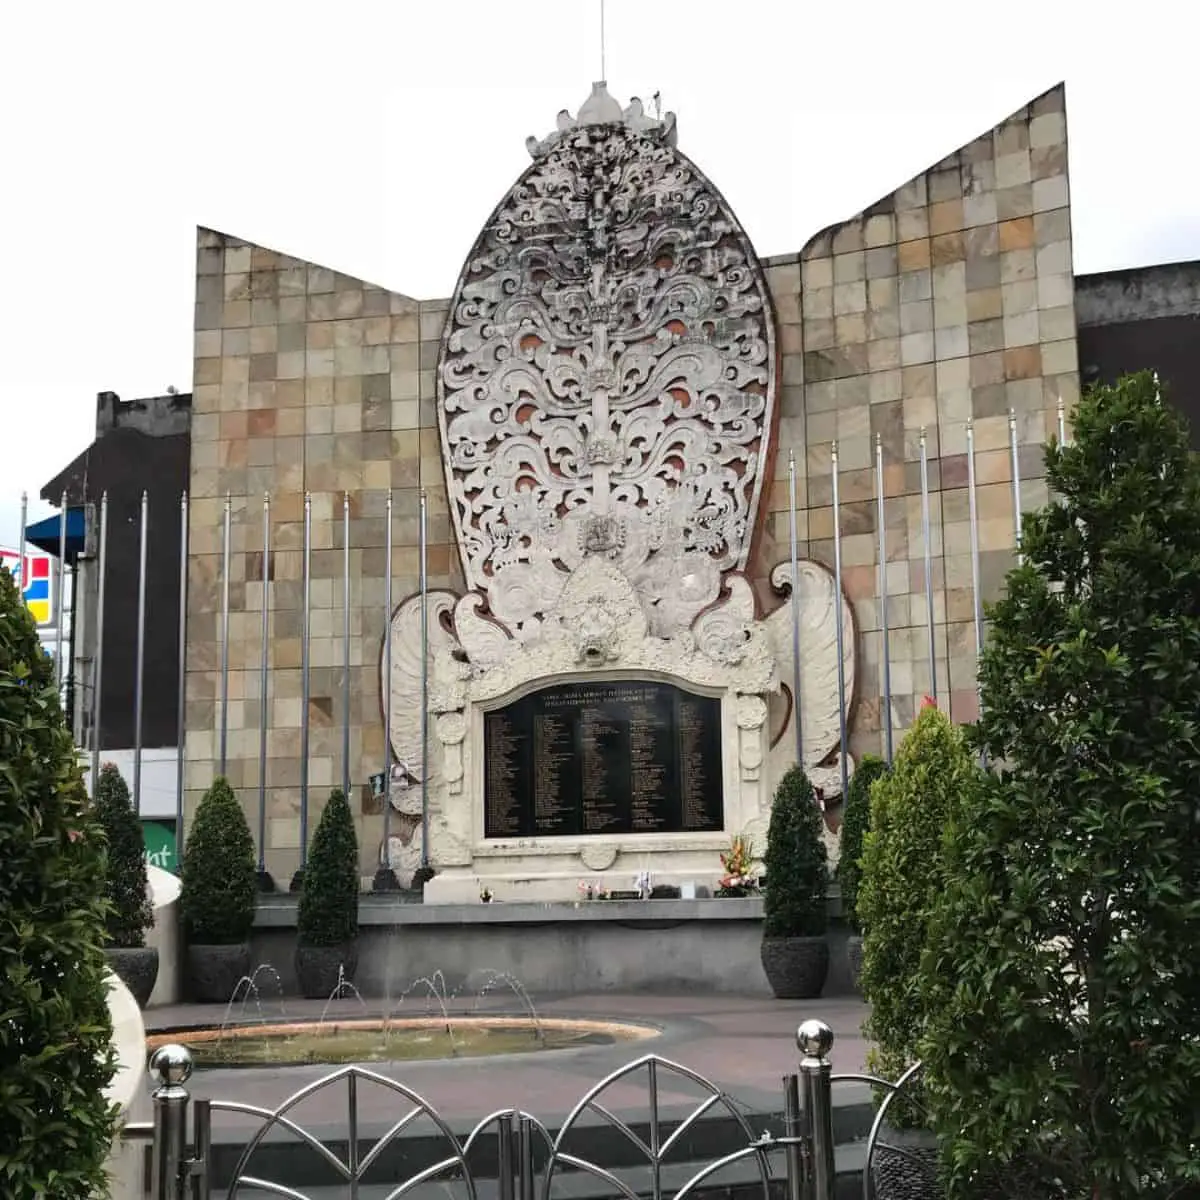 Ground zero monument in Kuta Bali